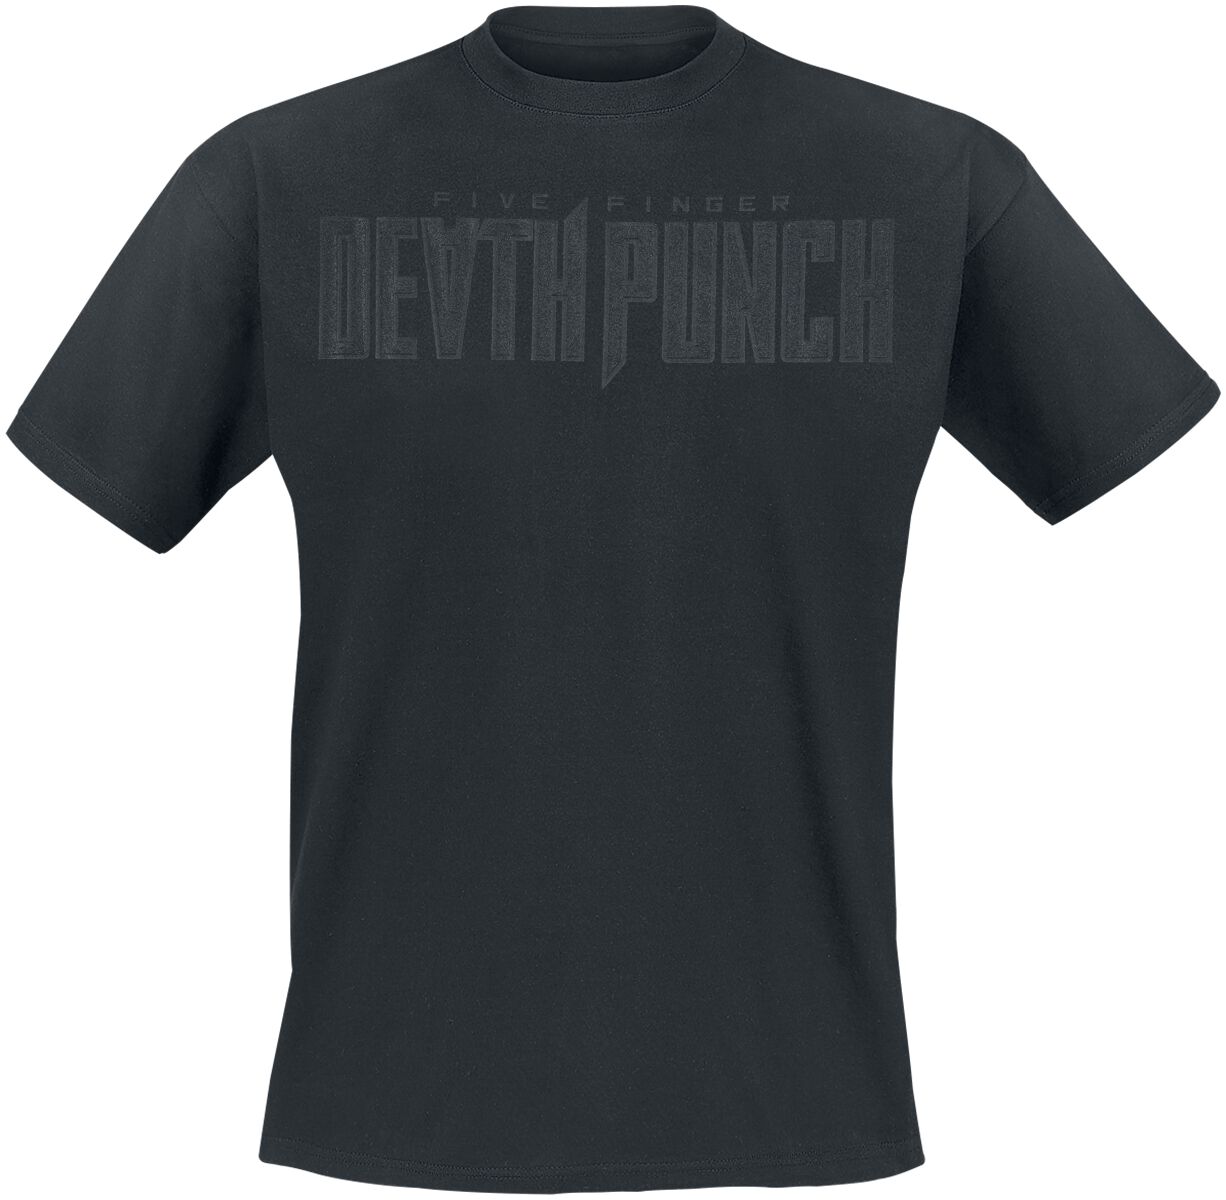 Five Finger Death Punch T-Shirt - Black On Black Knuckles V2 - S bis 4XL - für Männer - Größe S - schwarz  - Lizenziertes Merchandise!